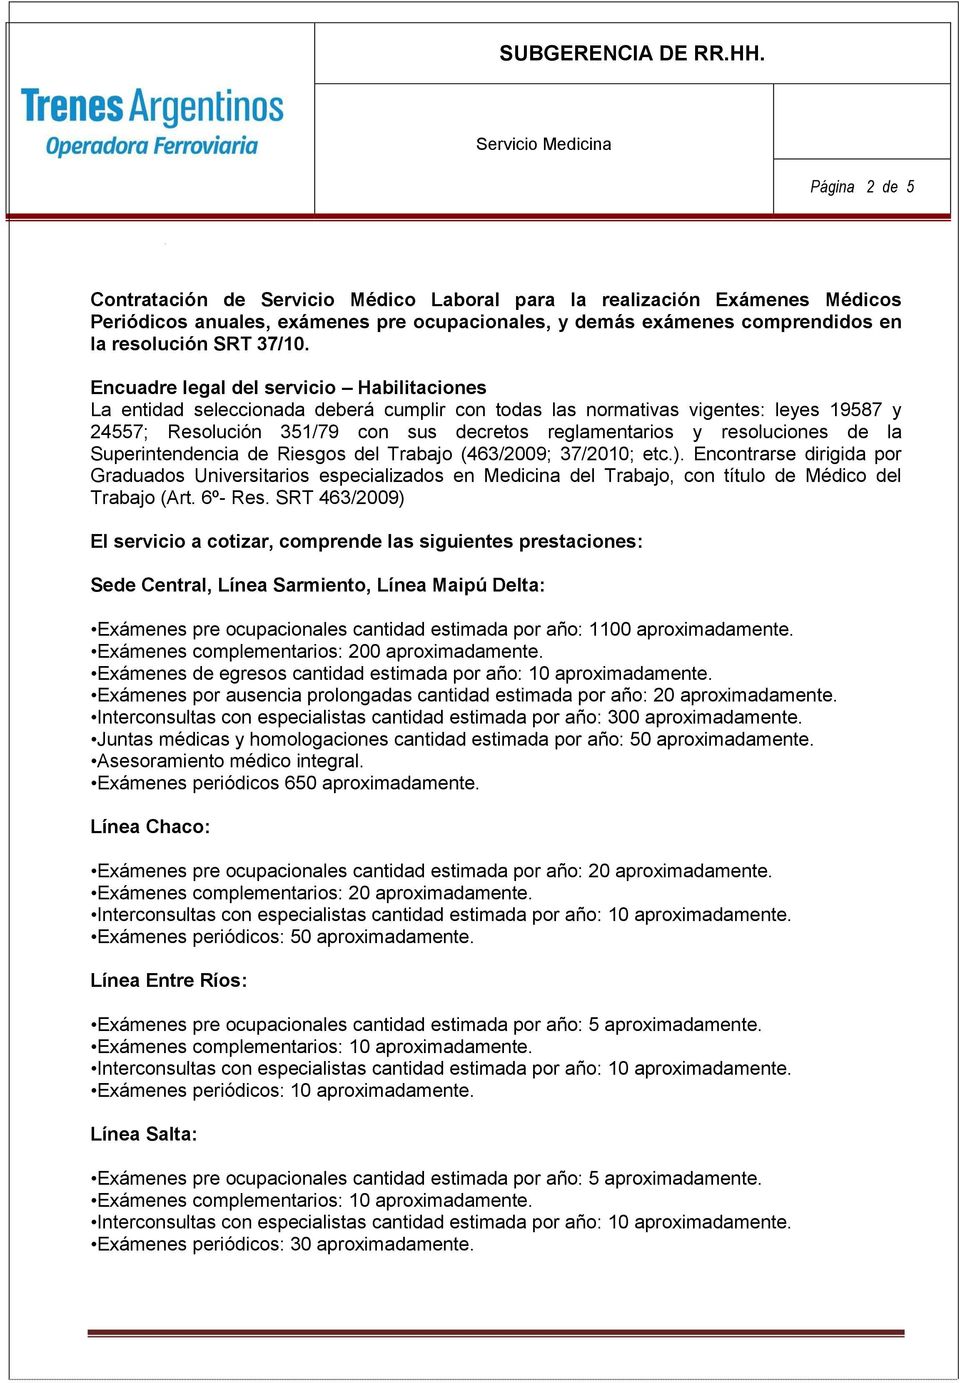 resoluciones de la Superintendencia de Riesgos del Trabajo (463/2009; 37/2010; etc.).